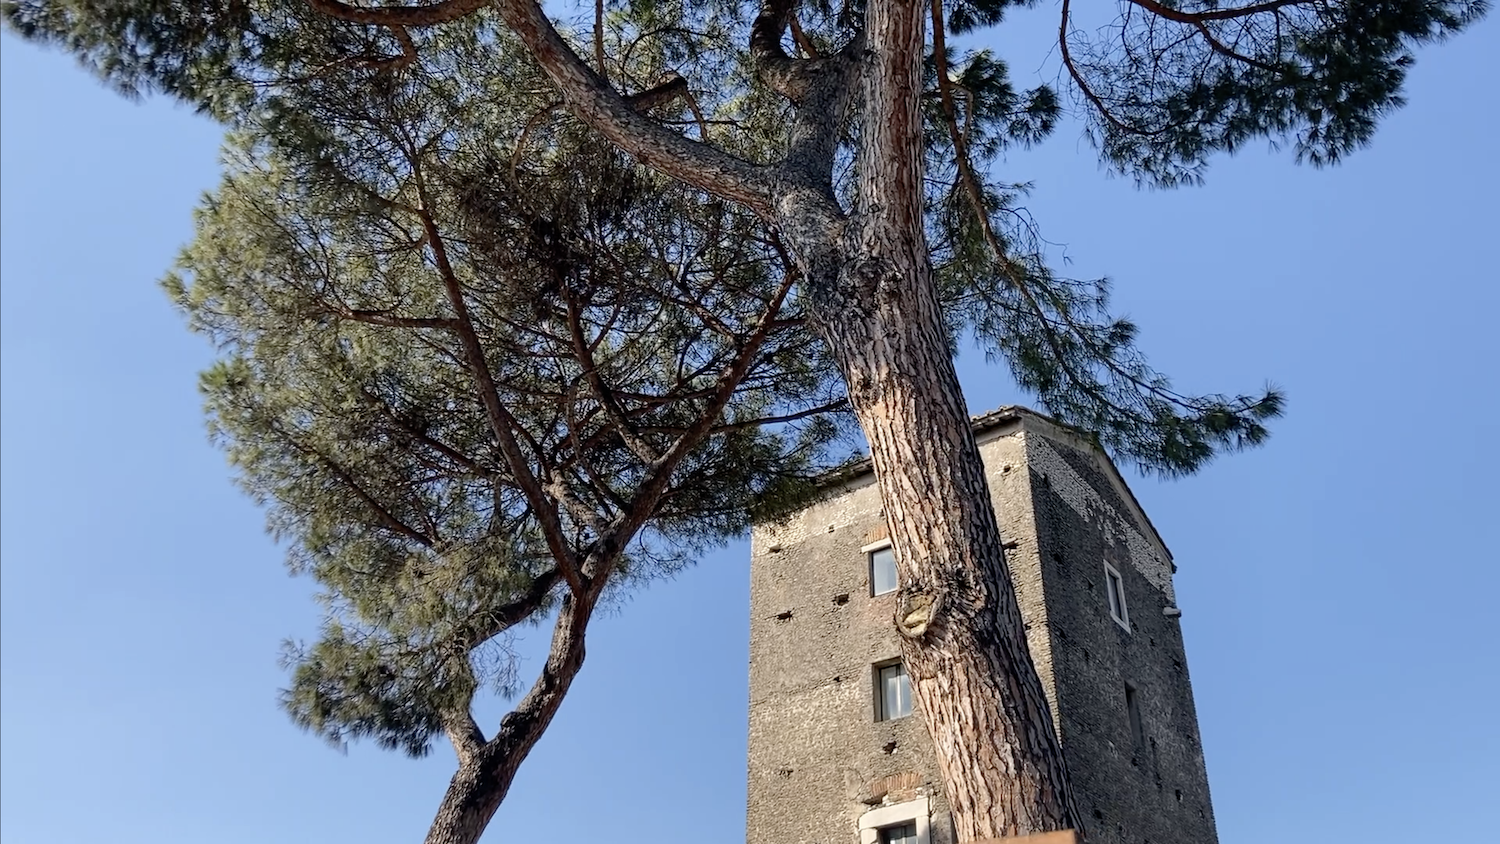 La torre sorge lungo la Via Salaria, a pochi chilometri dal centro di Roma, tra alberi di pino che conservano tracce dell’antico paesaggio della campagna romana